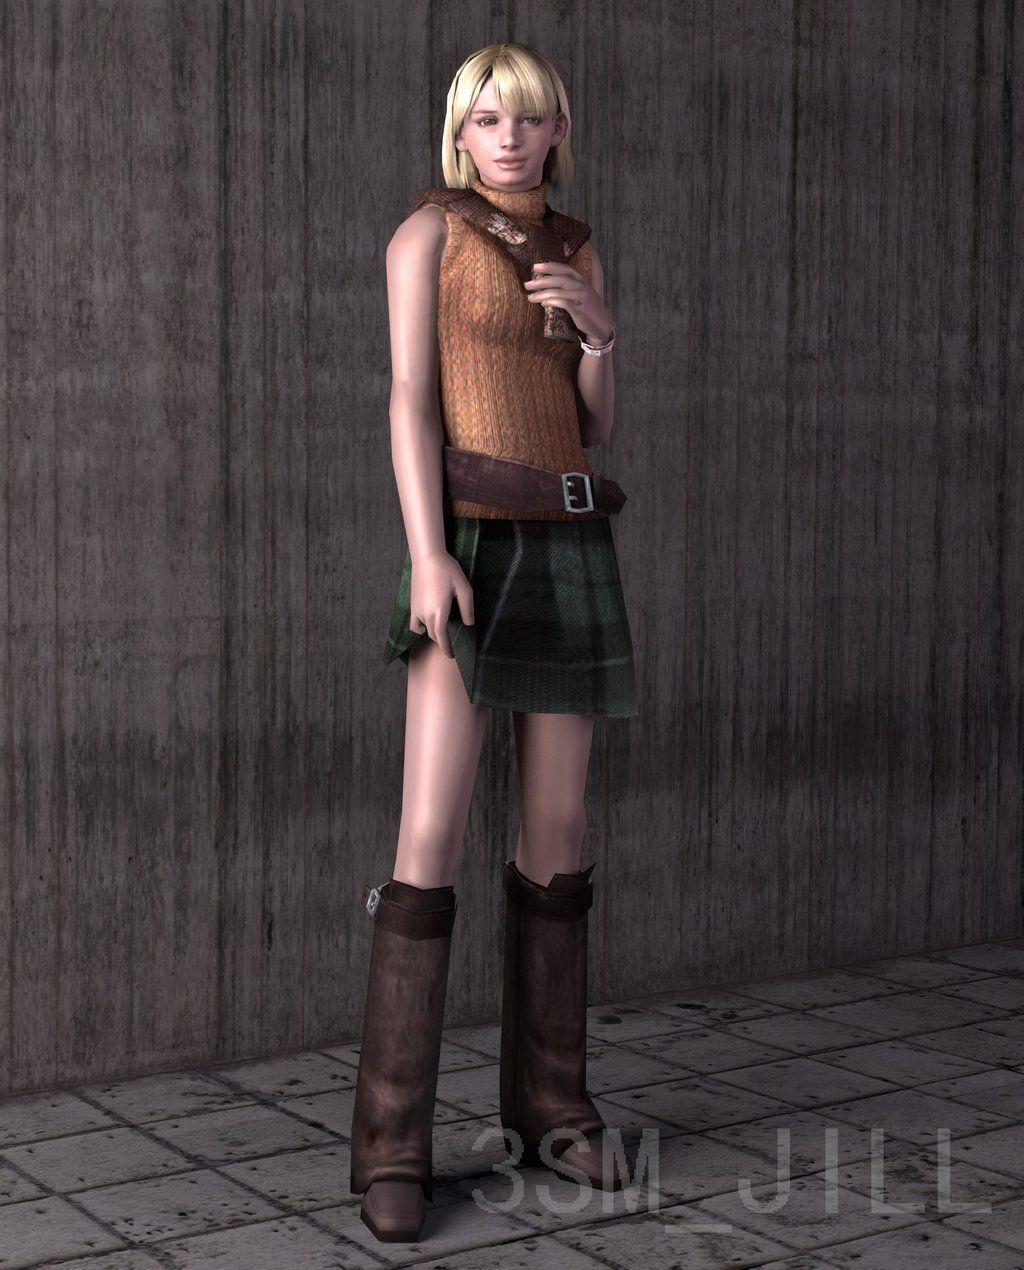 Ashley Graham From Resident Evil 4 Live Wallpaper